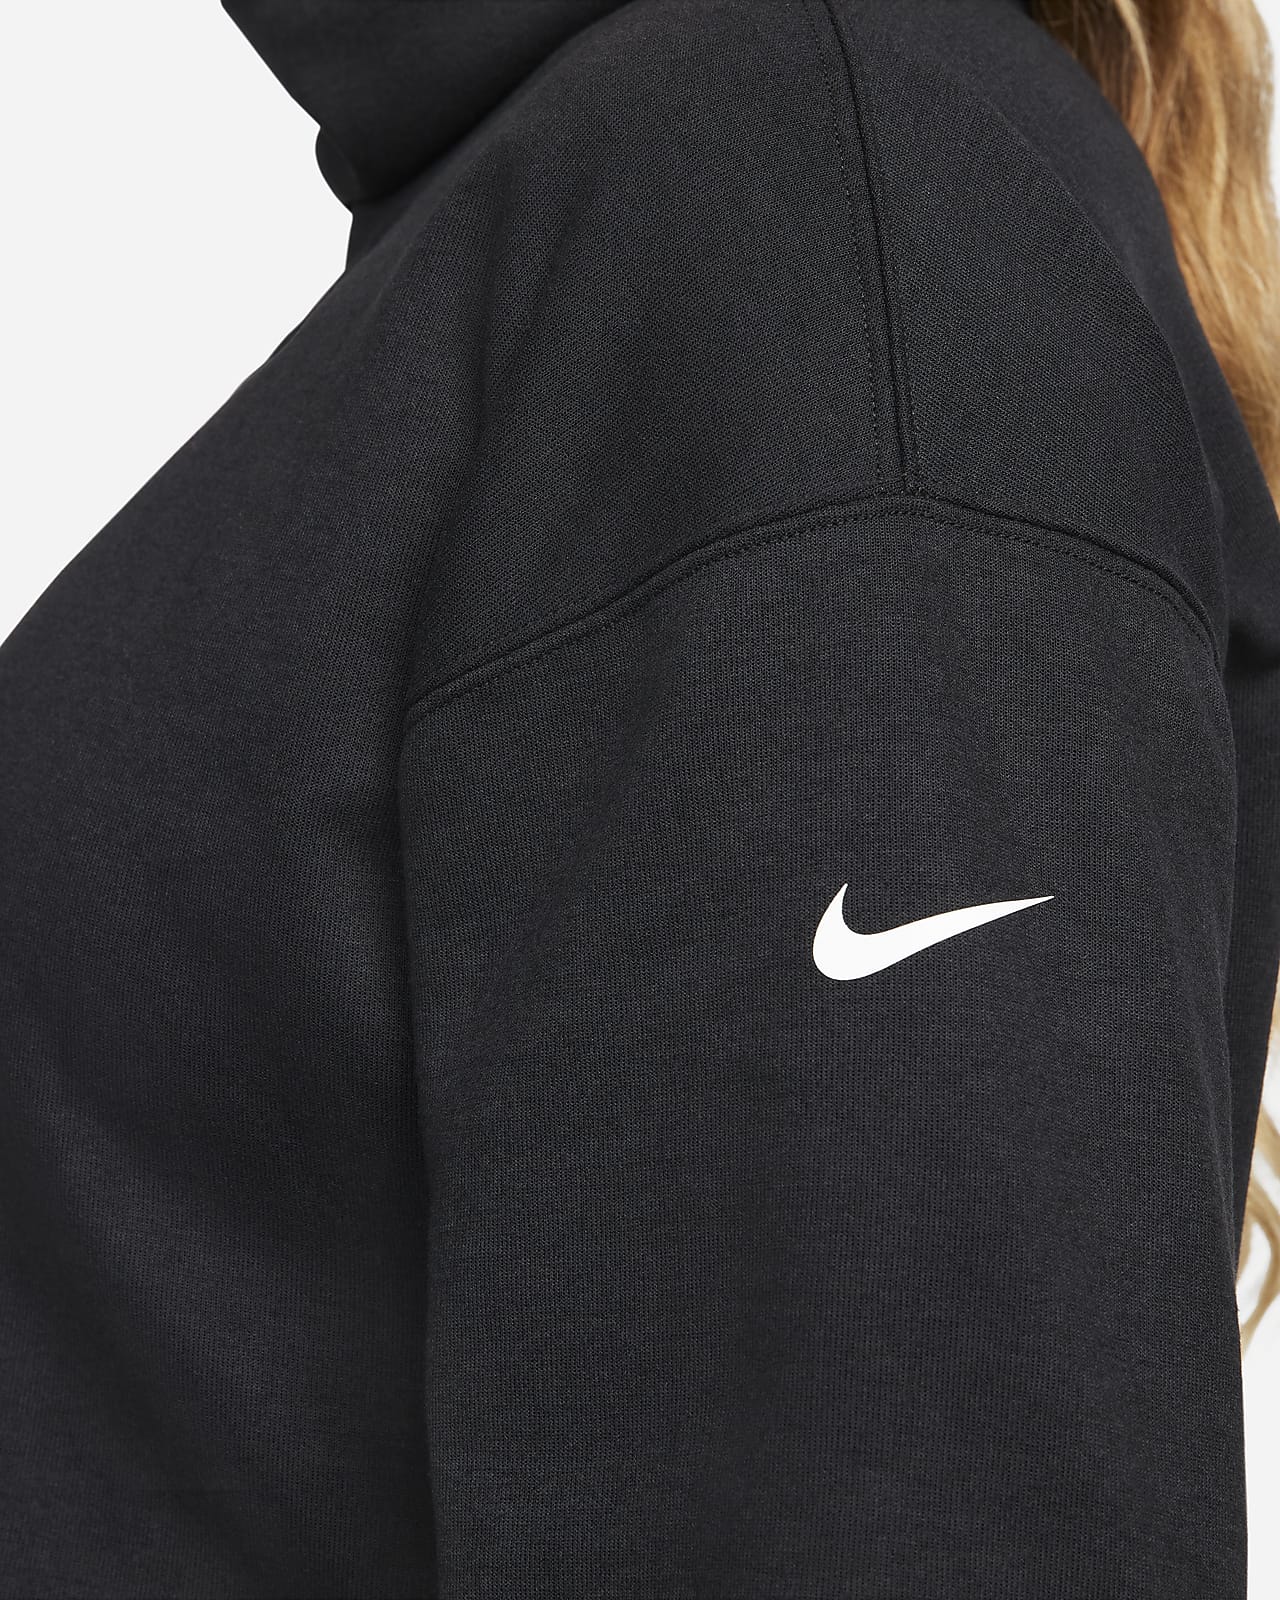 Amerika druiven Oppervlakkig Nike (M) Women's Reversible Pullover (Maternity). Nike.com